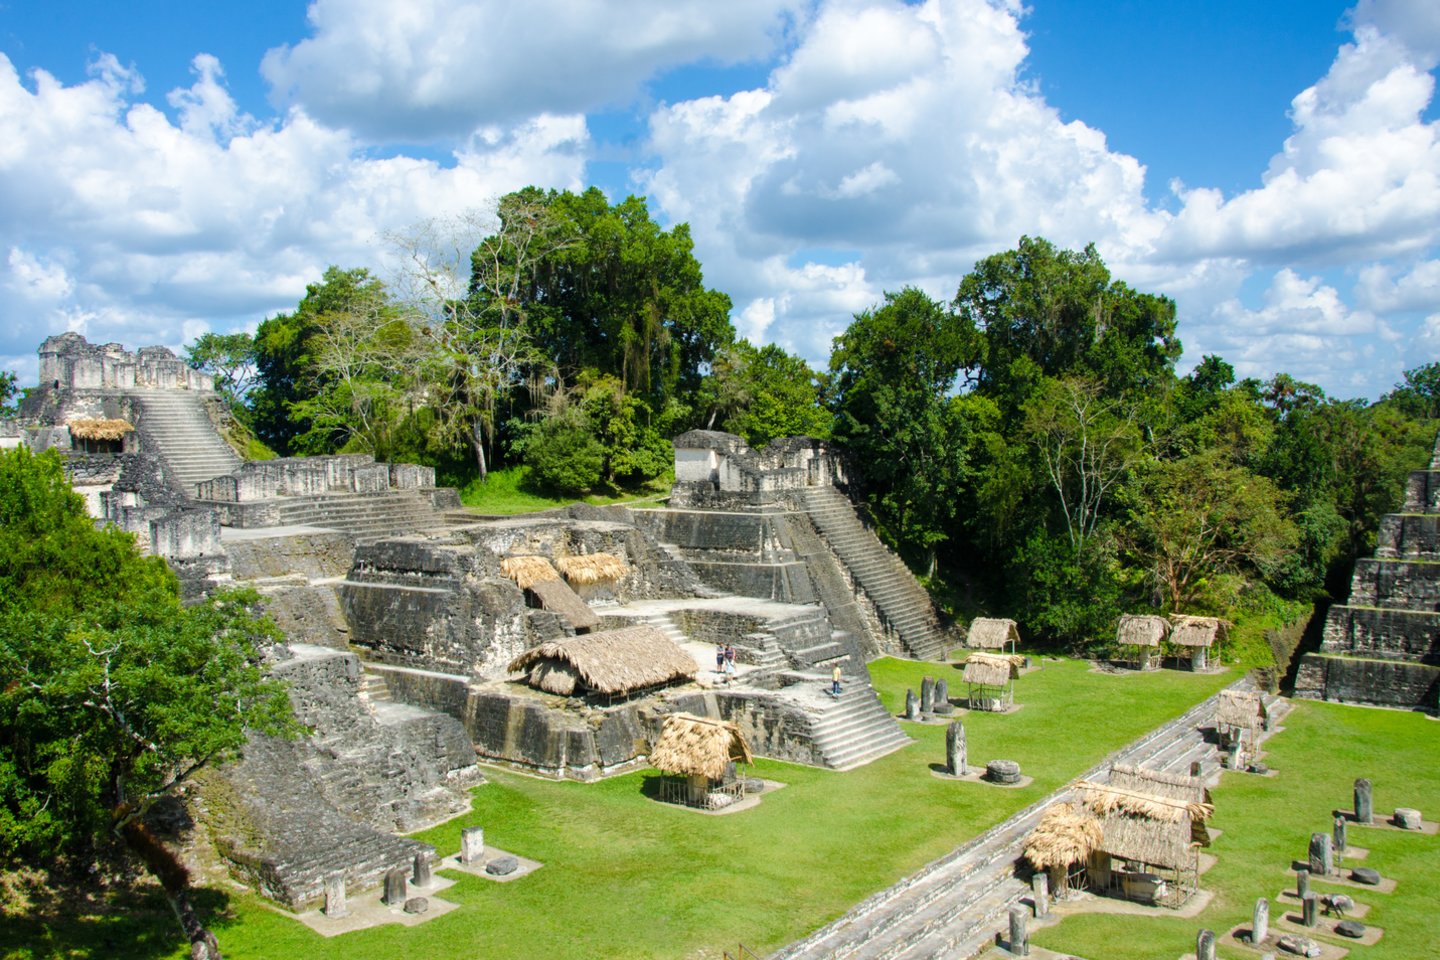  Mokslininkai išsiaiškino, kad majai į savo miestą Tikalį gabenosi mineralą ceolitą ir naudojo jį vandens filtravimui tūkstančius metų prieš tai, kai tai sugalvojo kitos civilizacijos. <br> 123rf nuotr.